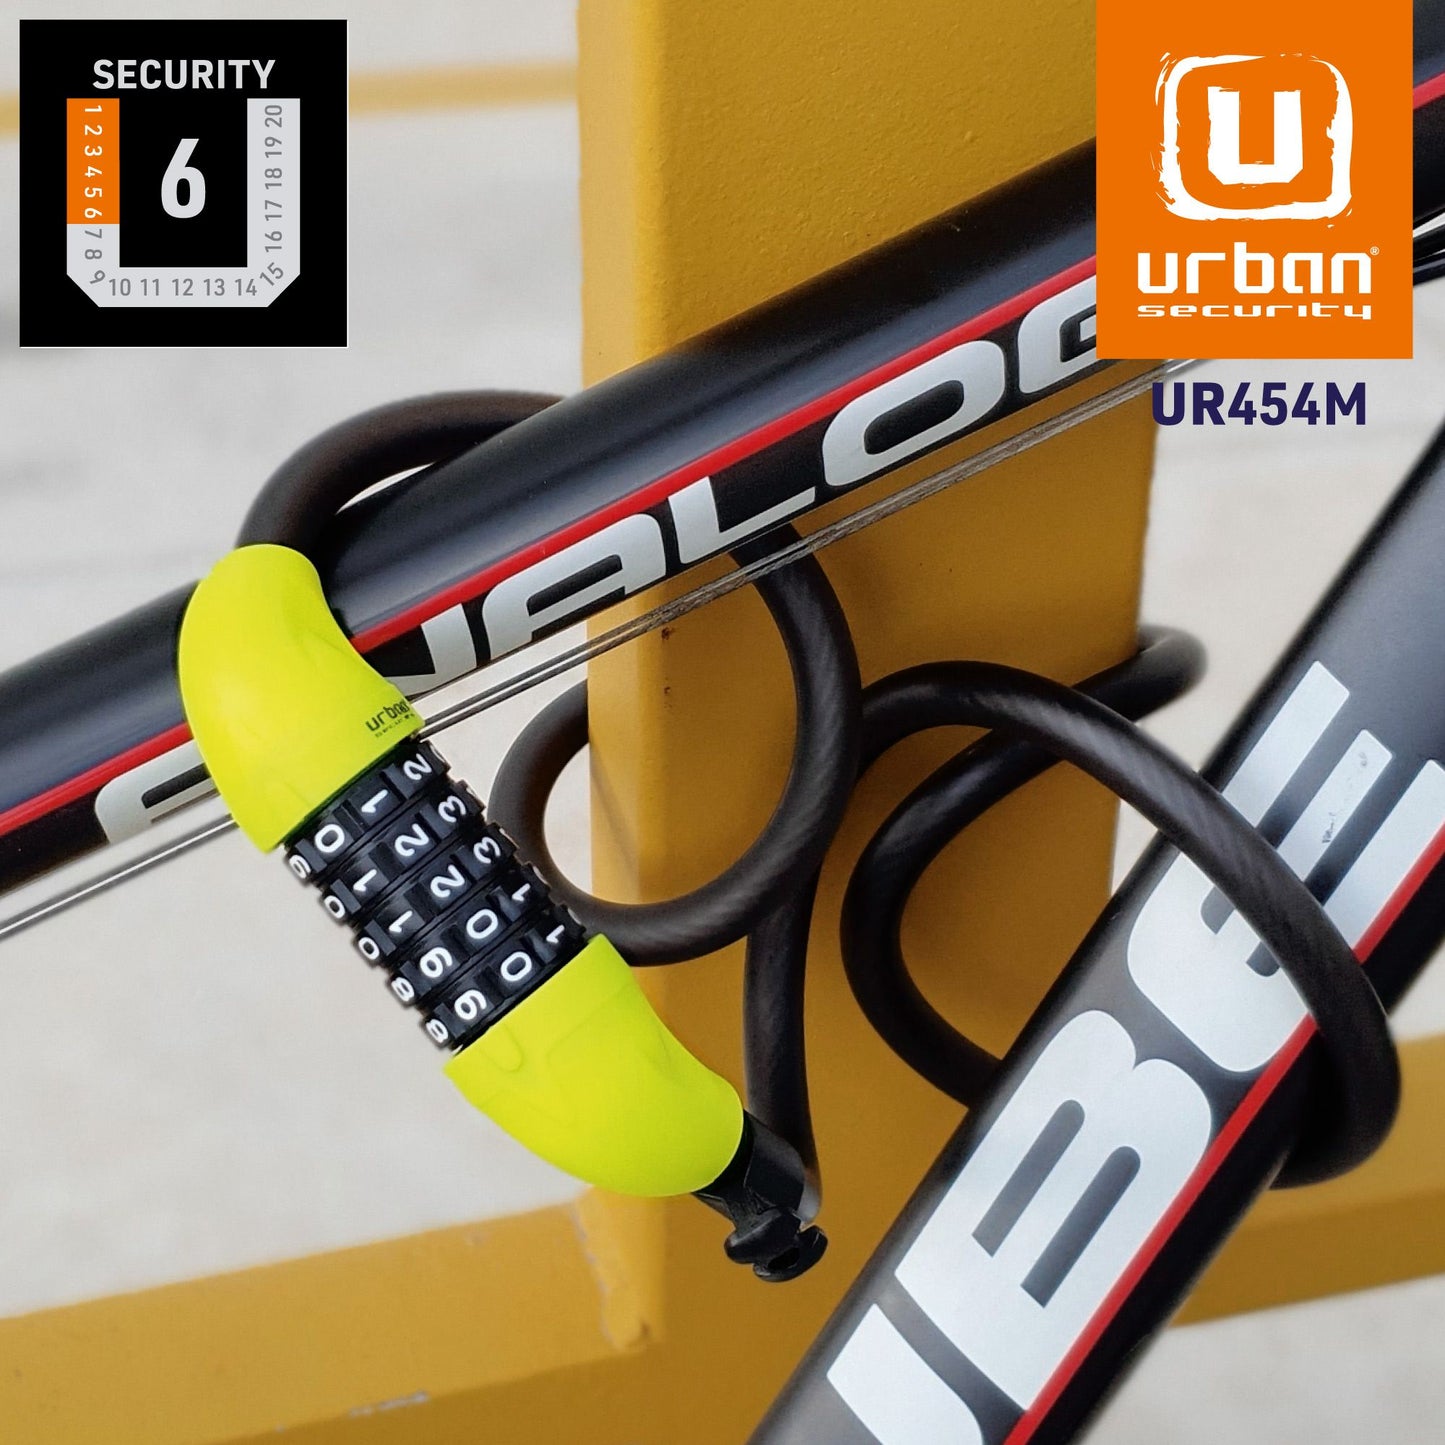 Antirrobo Moto Cable Urban UR454M - URA Moto